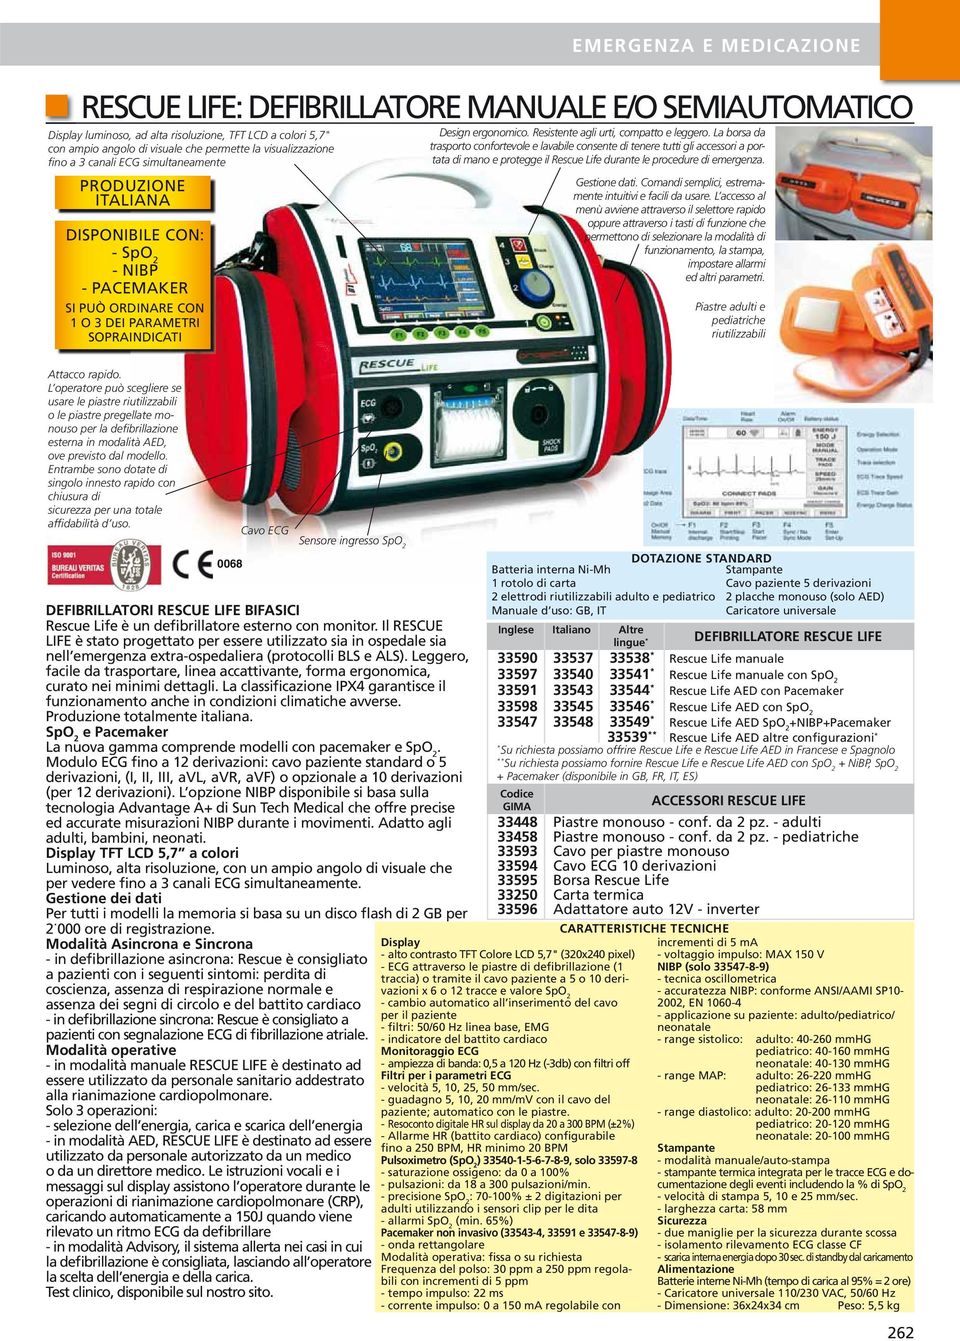 parametri ECG velocità 5, 0, 5, 50 mm/sec. guadagno 5, 0, 0 mm/mv con il cavo del paziente; automatico con le piastre.